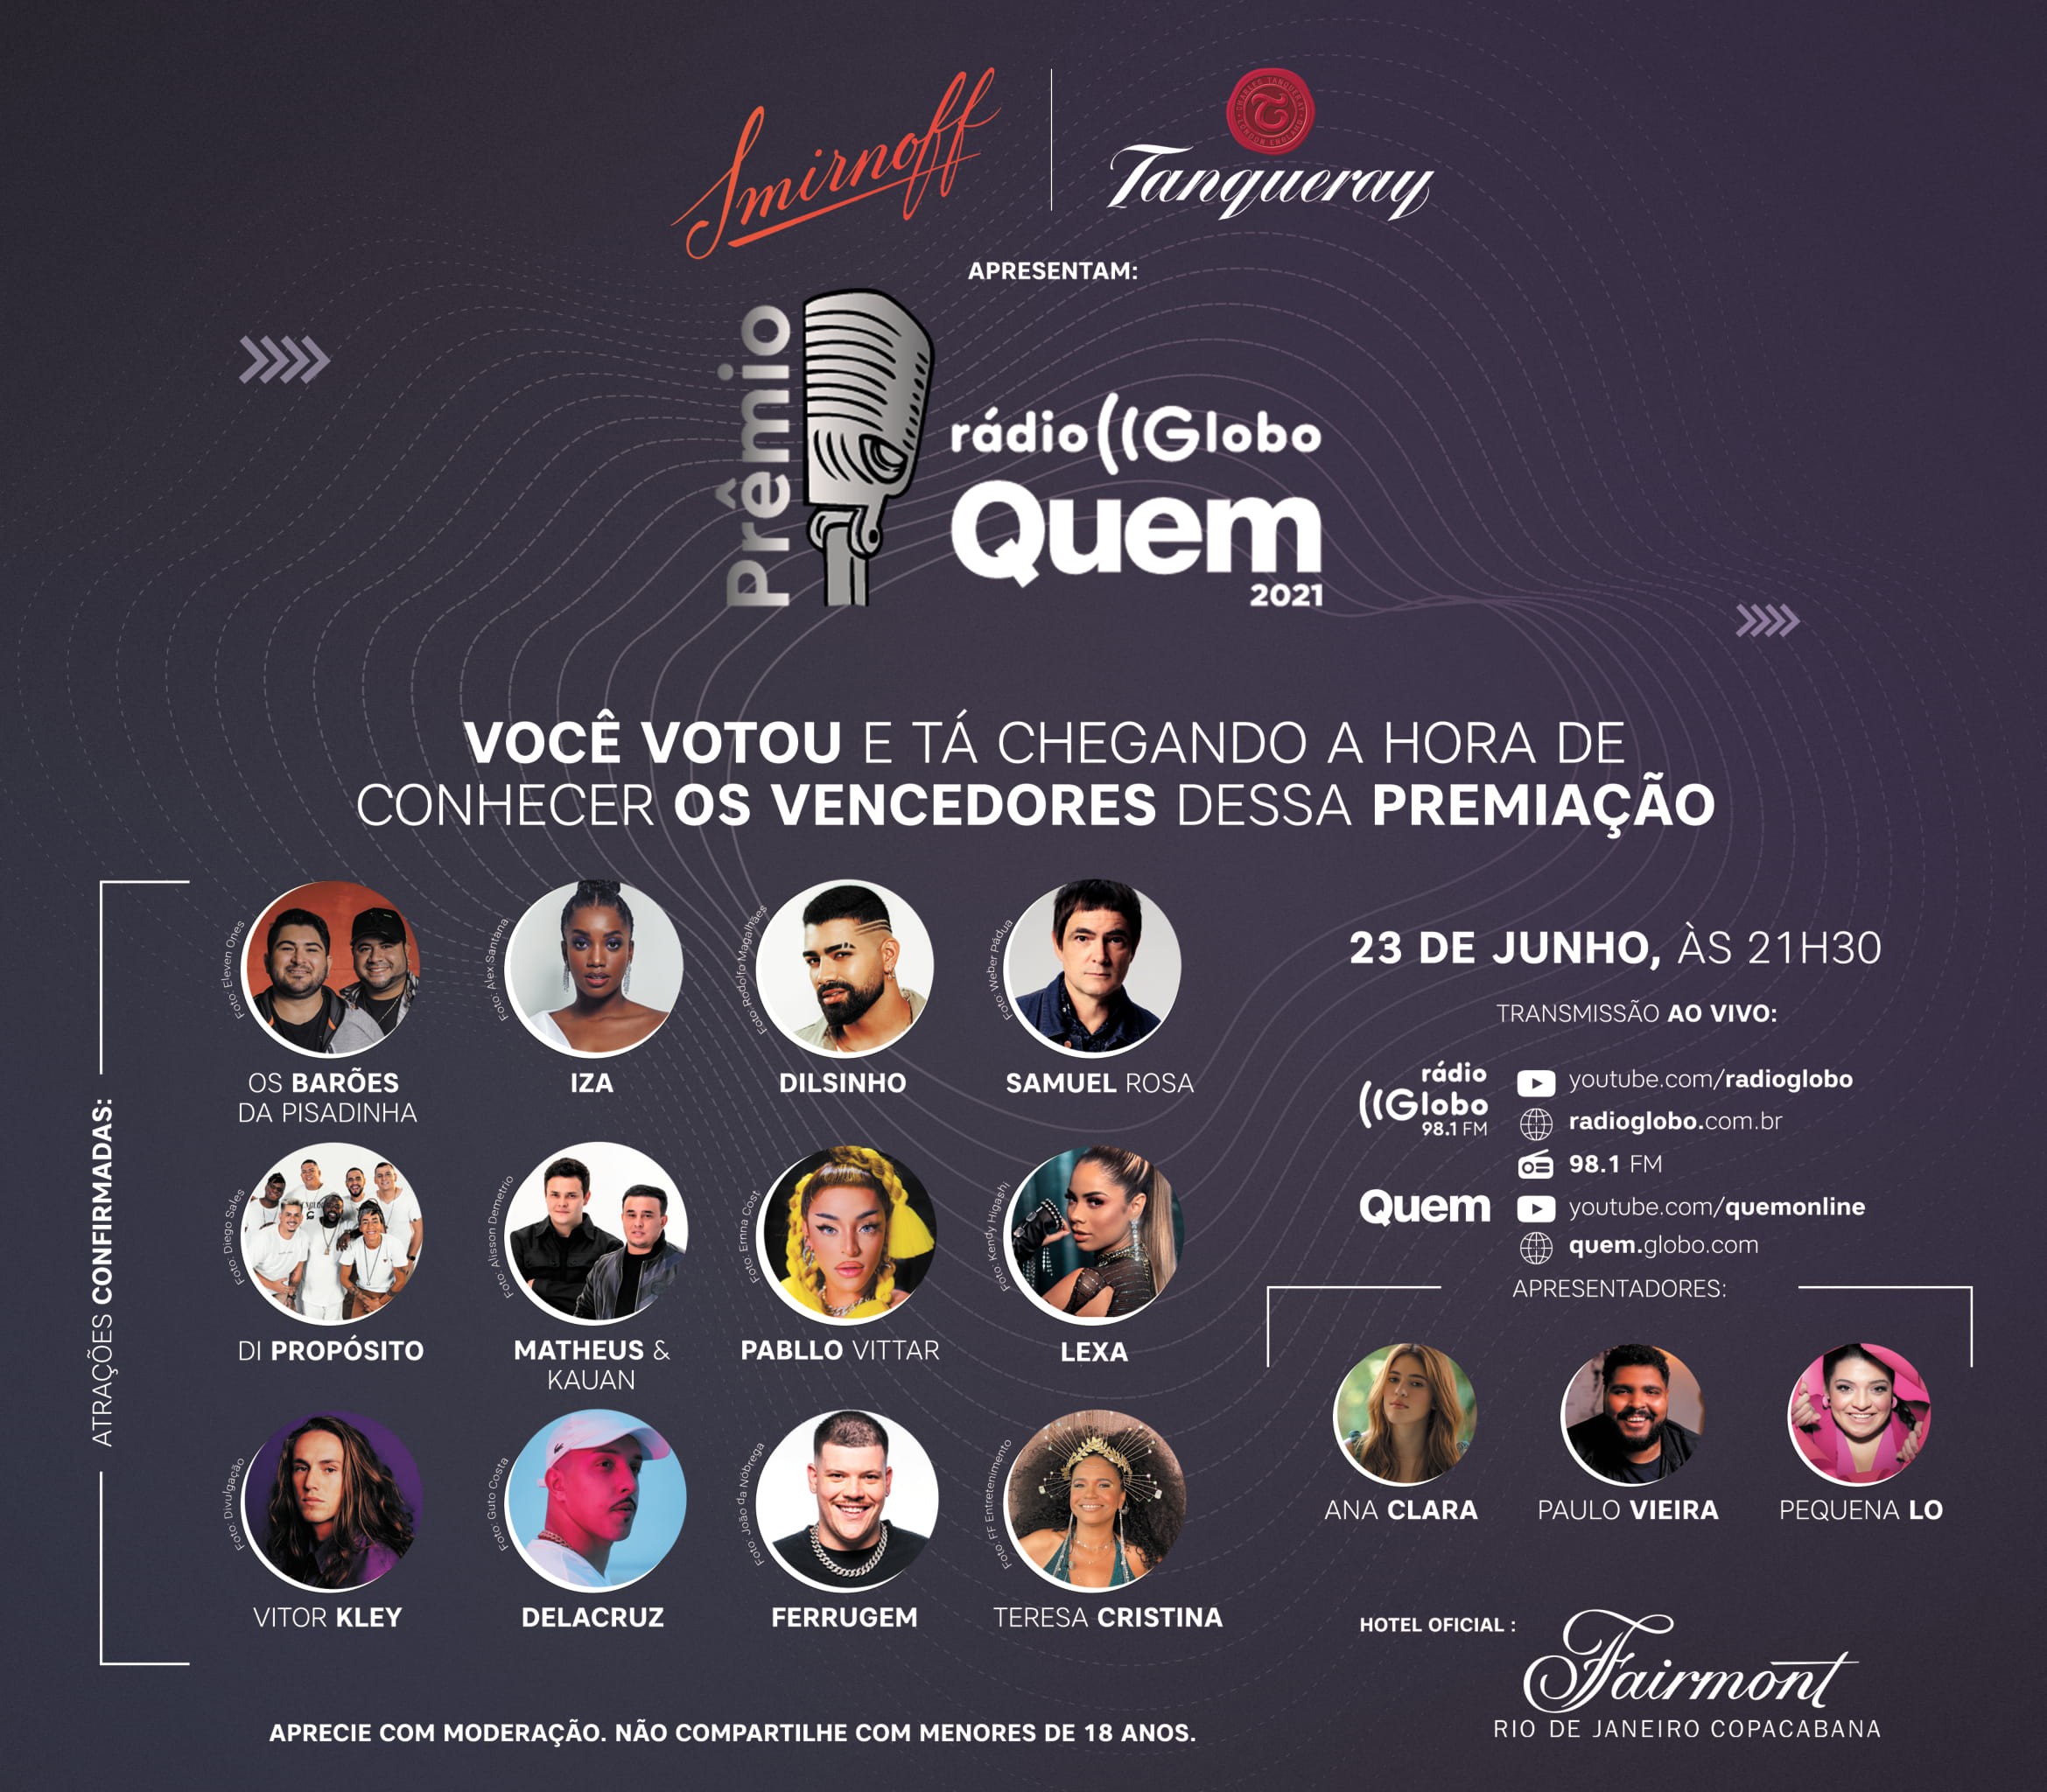 Prêmio Rádio Globo Quem acontece no dia 23 de junho (Foto: Divulgação)